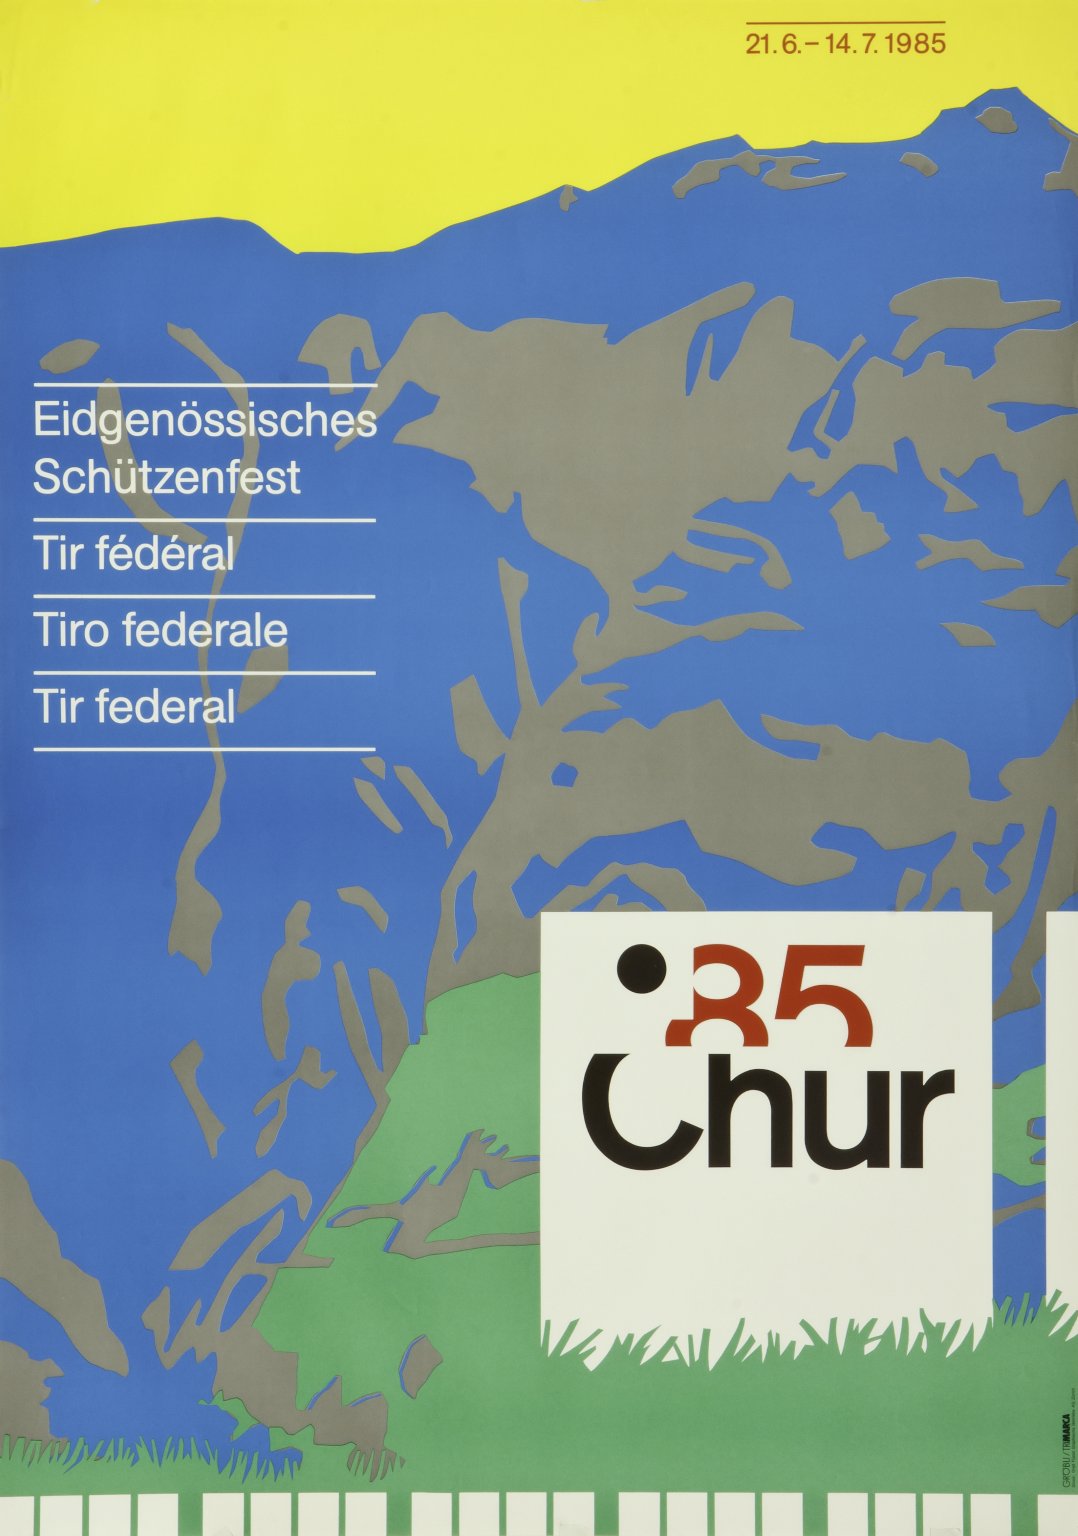 Eidgenössisches Schützenfest 85 Chur